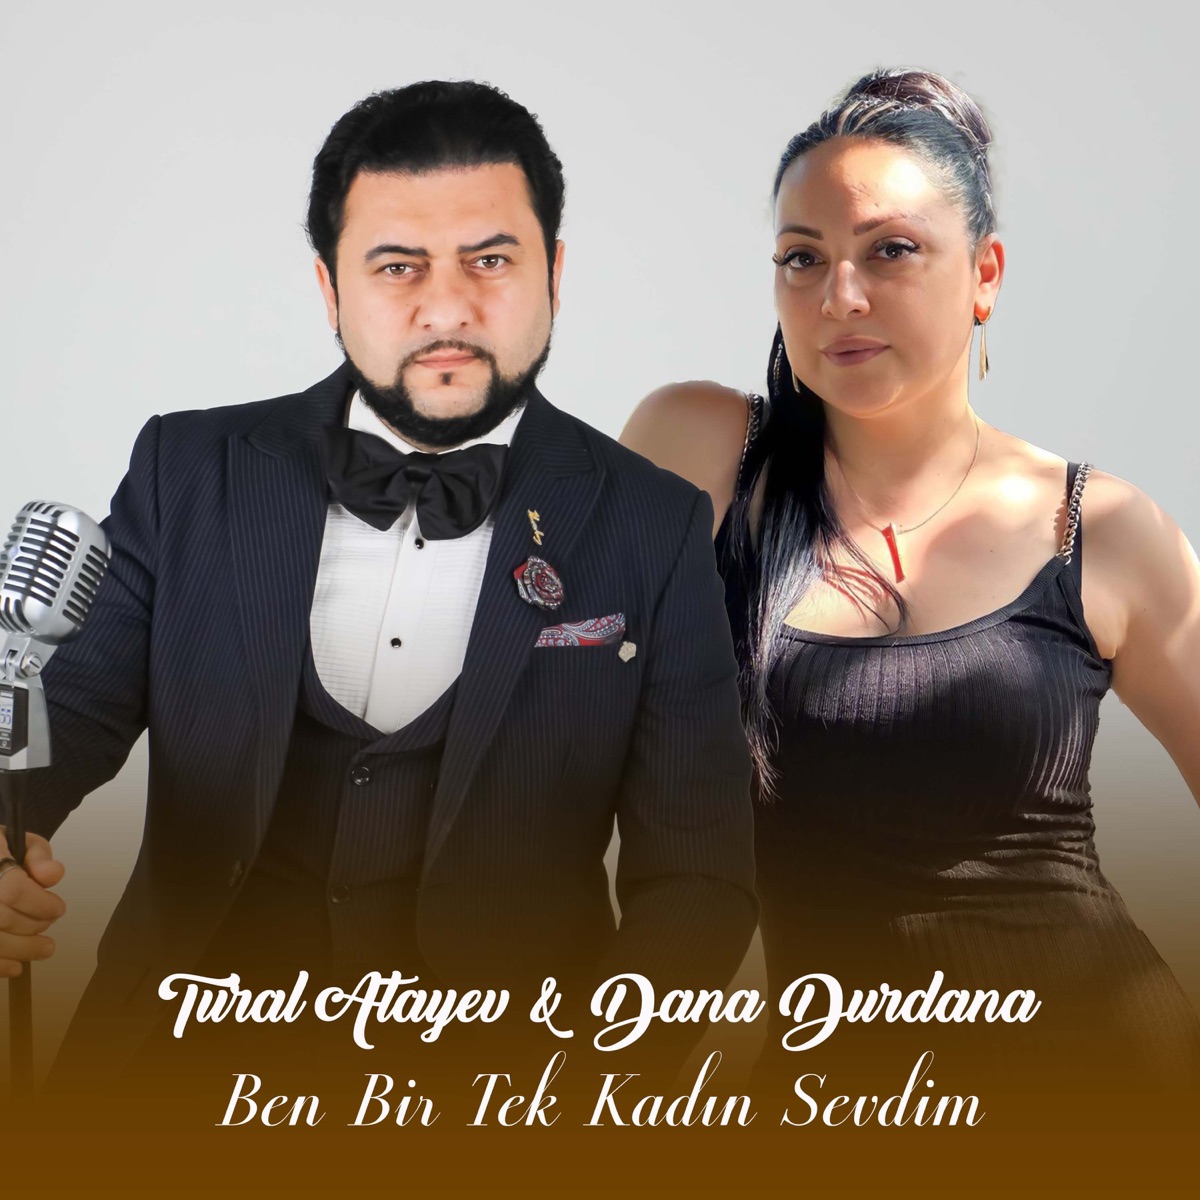 Ben Bir Tek Kadın Sevdim (feat. Dana Durdana) - Single - Album by Tural  Atayev - Apple Music